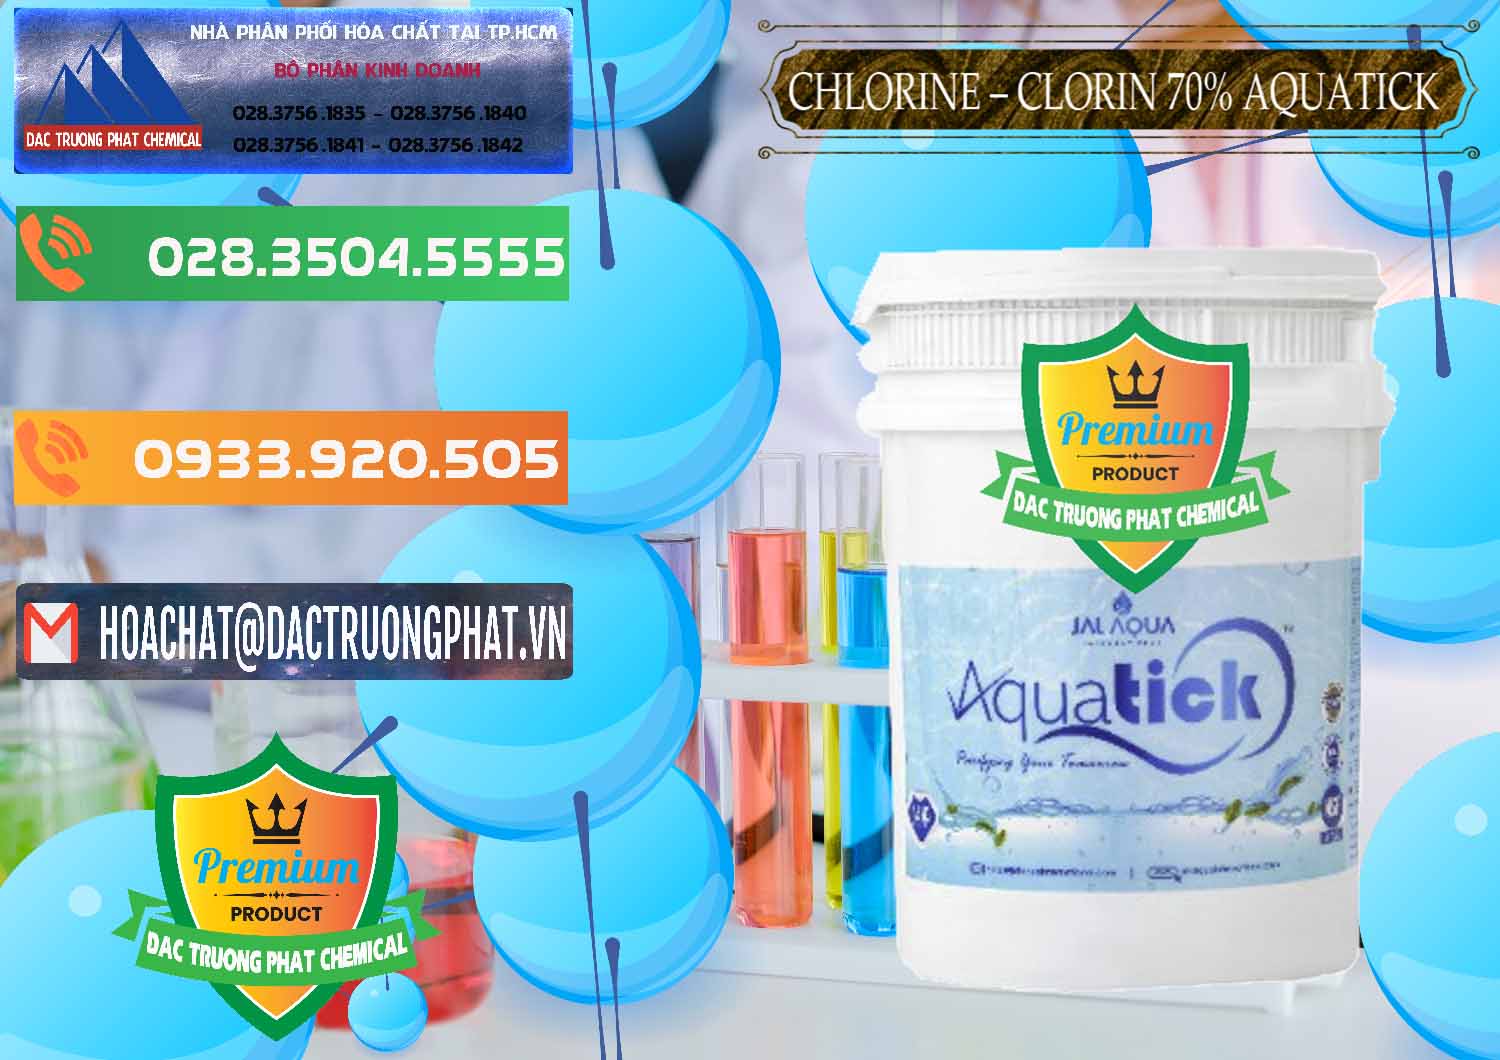 Bán - cung cấp Chlorine – Clorin 70% Aquatick Thùng Cao Jal Aqua Ấn Độ India - 0237 - Kinh doanh ( phân phối ) hóa chất tại TP.HCM - hoachatxulynuoc.com.vn